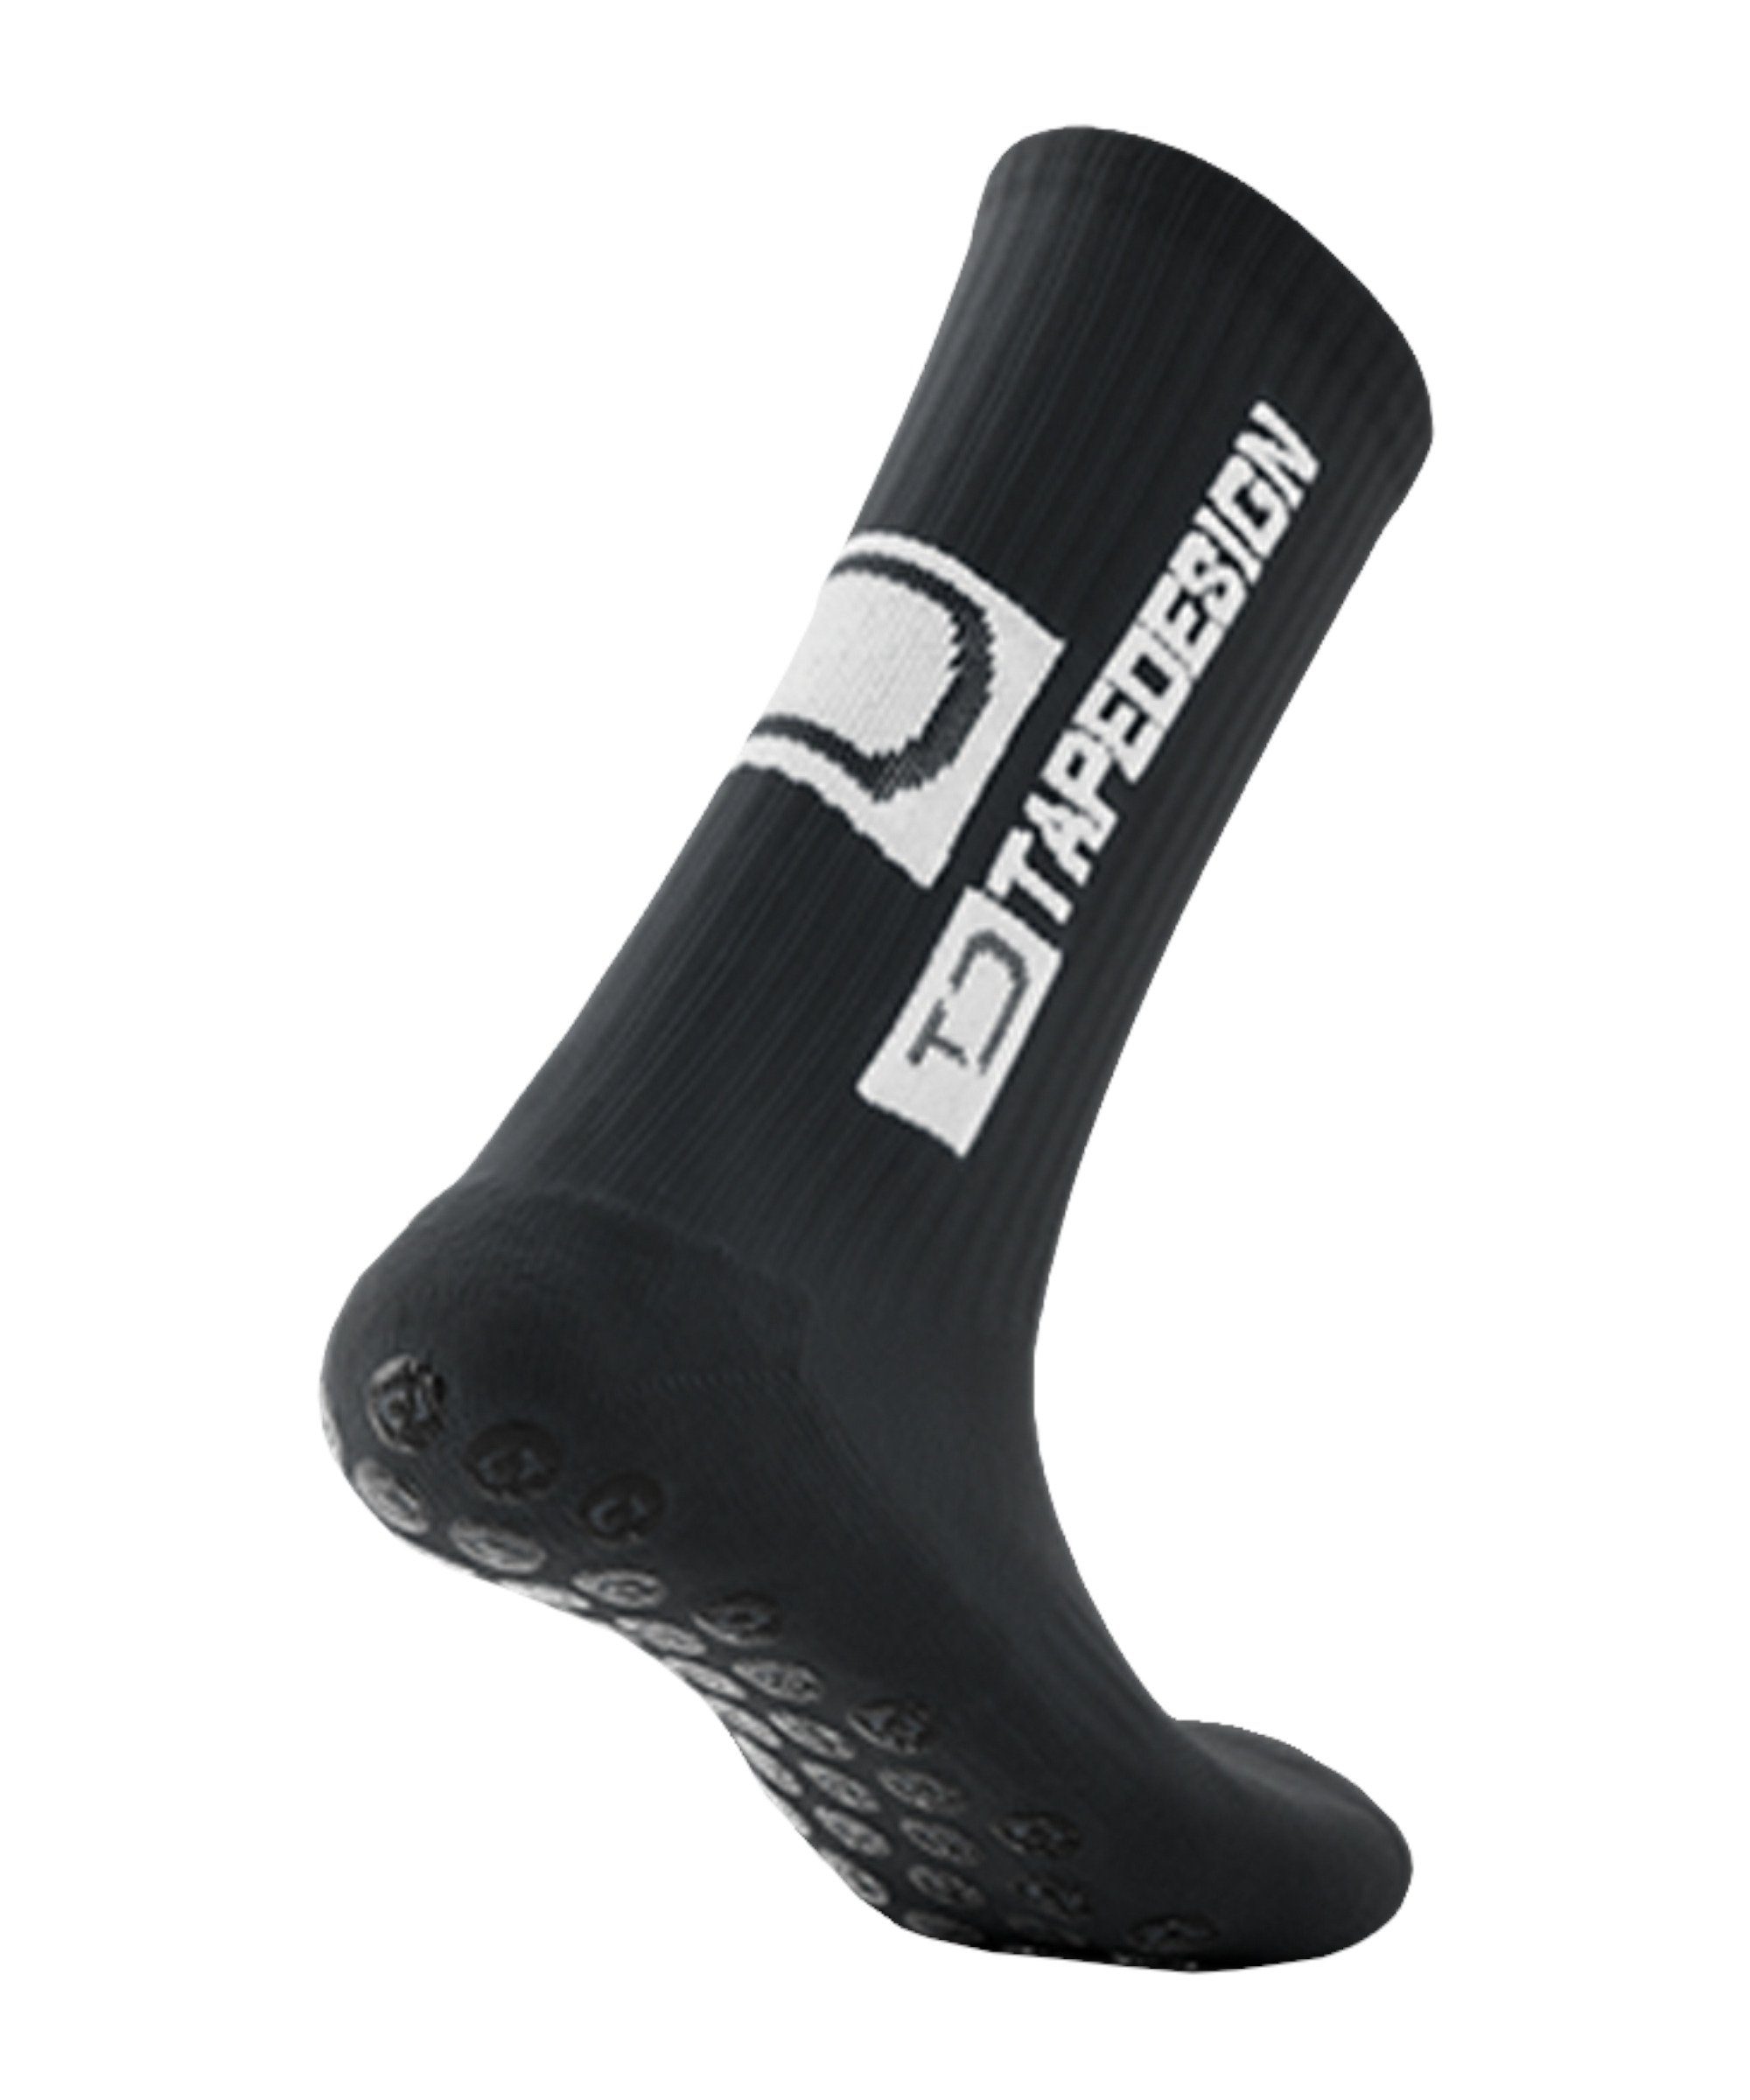 Tapedesign grau default Gripsocks Socken Sportsocken